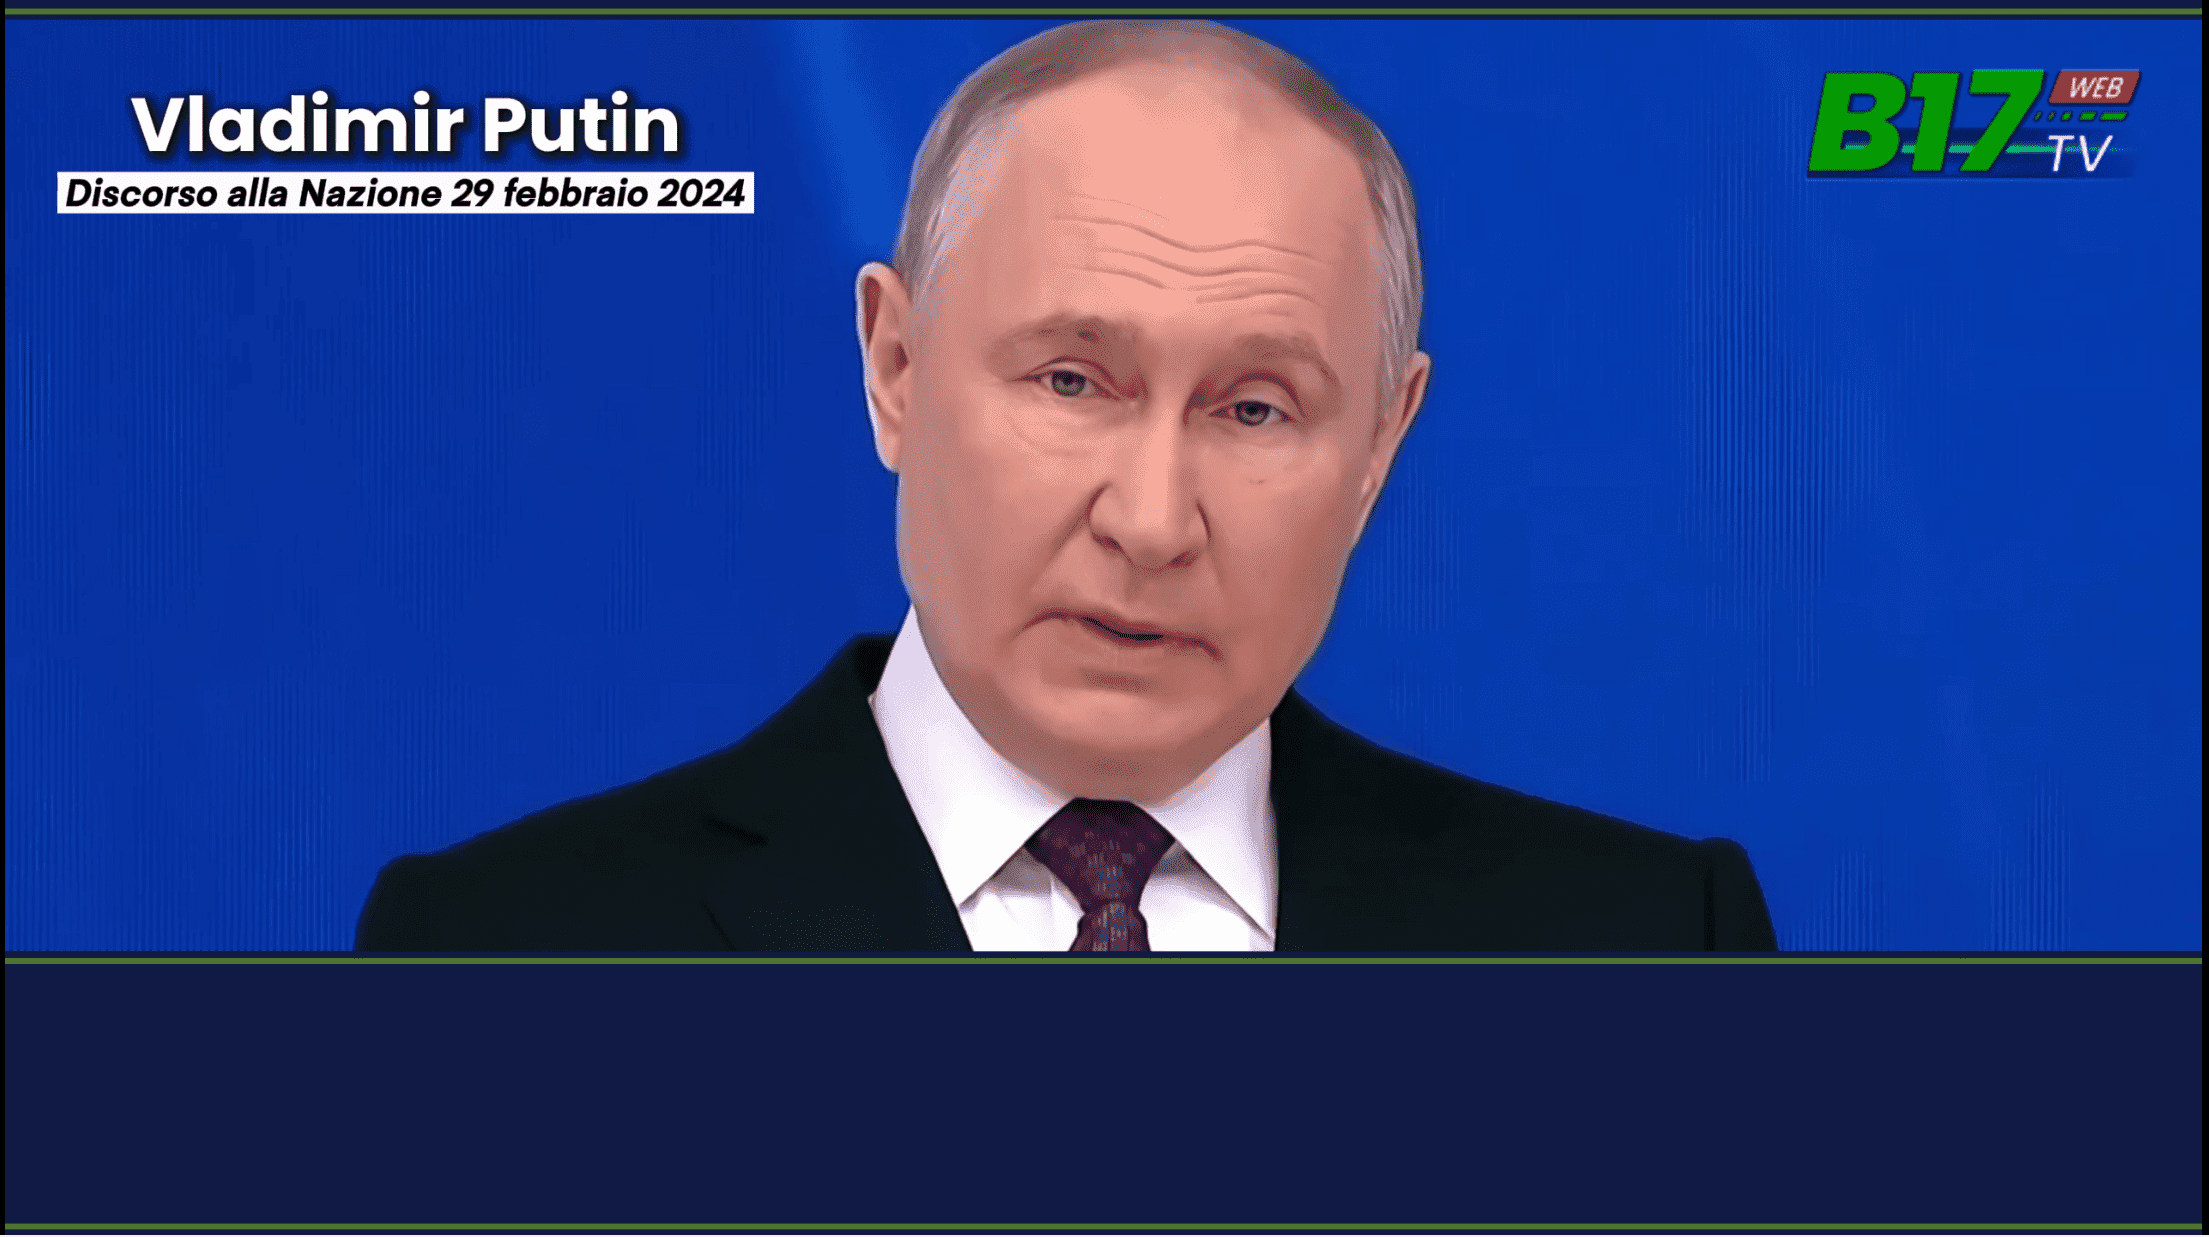 - Mosca 29 febbraio 2024 - Il presidente Putin mette in guardia l'occidente sui pericoli derivanti dall'arsenale nucleare russo